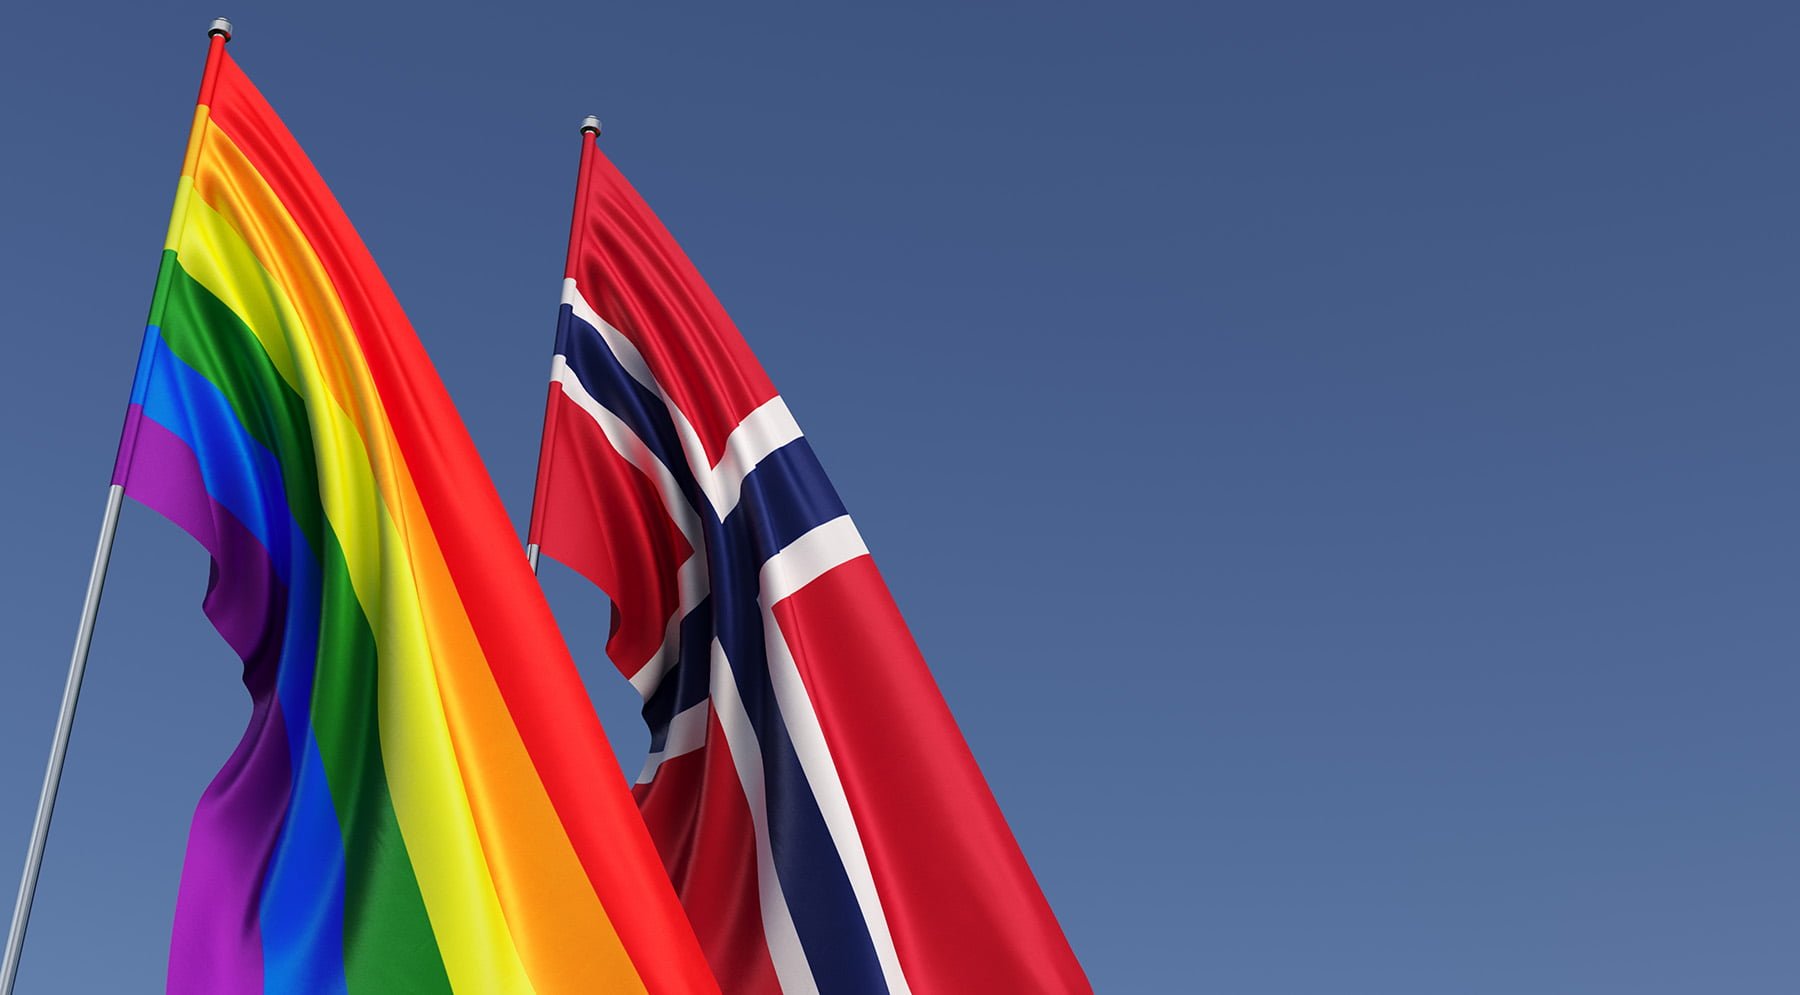 Oslo Pride flags in Norway.